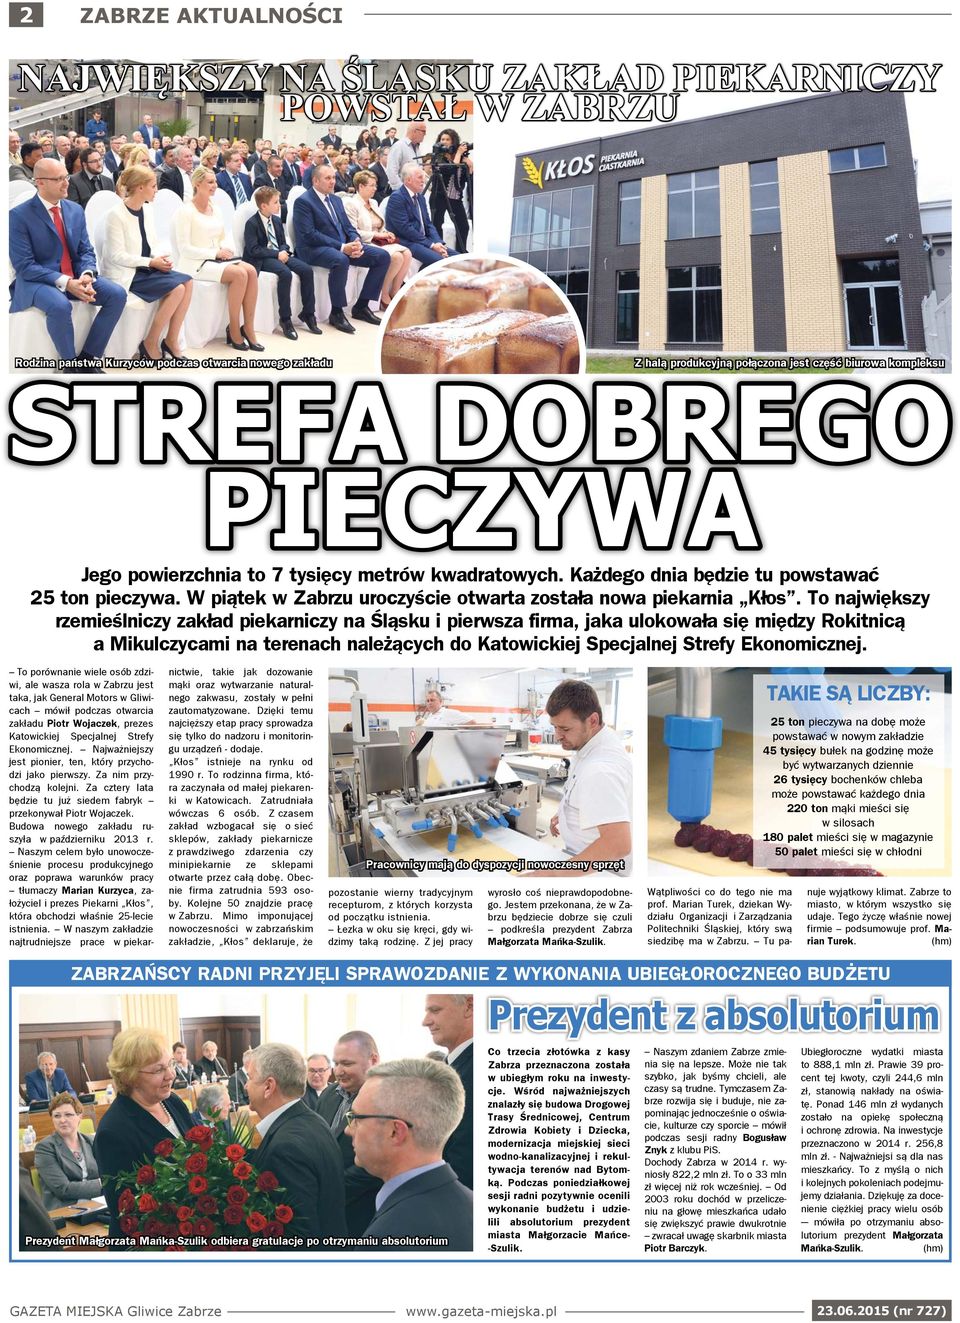 To największy rzemieślniczy zakład piekarniczy na Śląsku i pierwsza firma, jaka ulokowała się między Rokitnicą a Mikulczycami na terenach należących do Katowickiej Specjalnej Strefy Ekonomicznej.